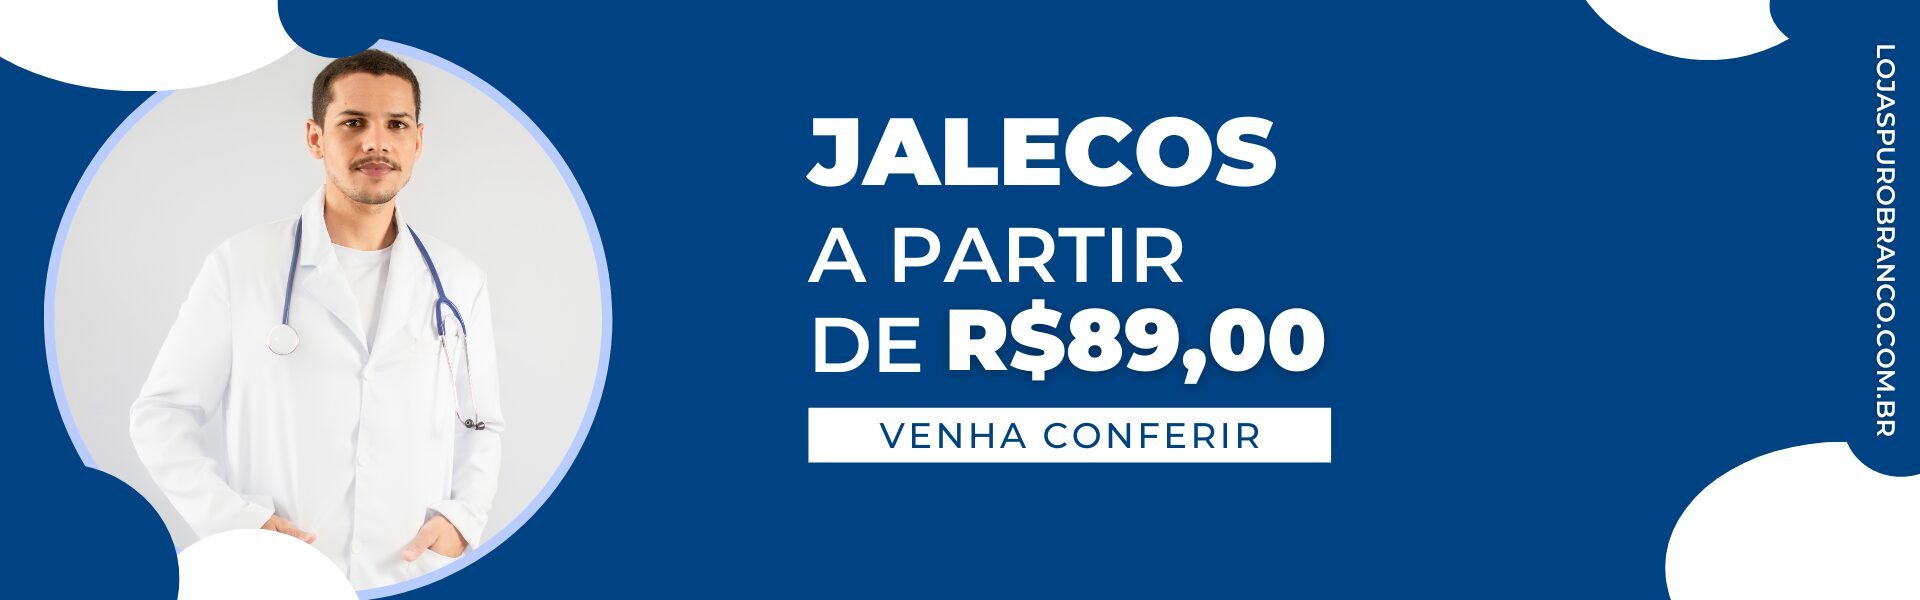 JALECOS A PARTIR DE 89,00 BARATO